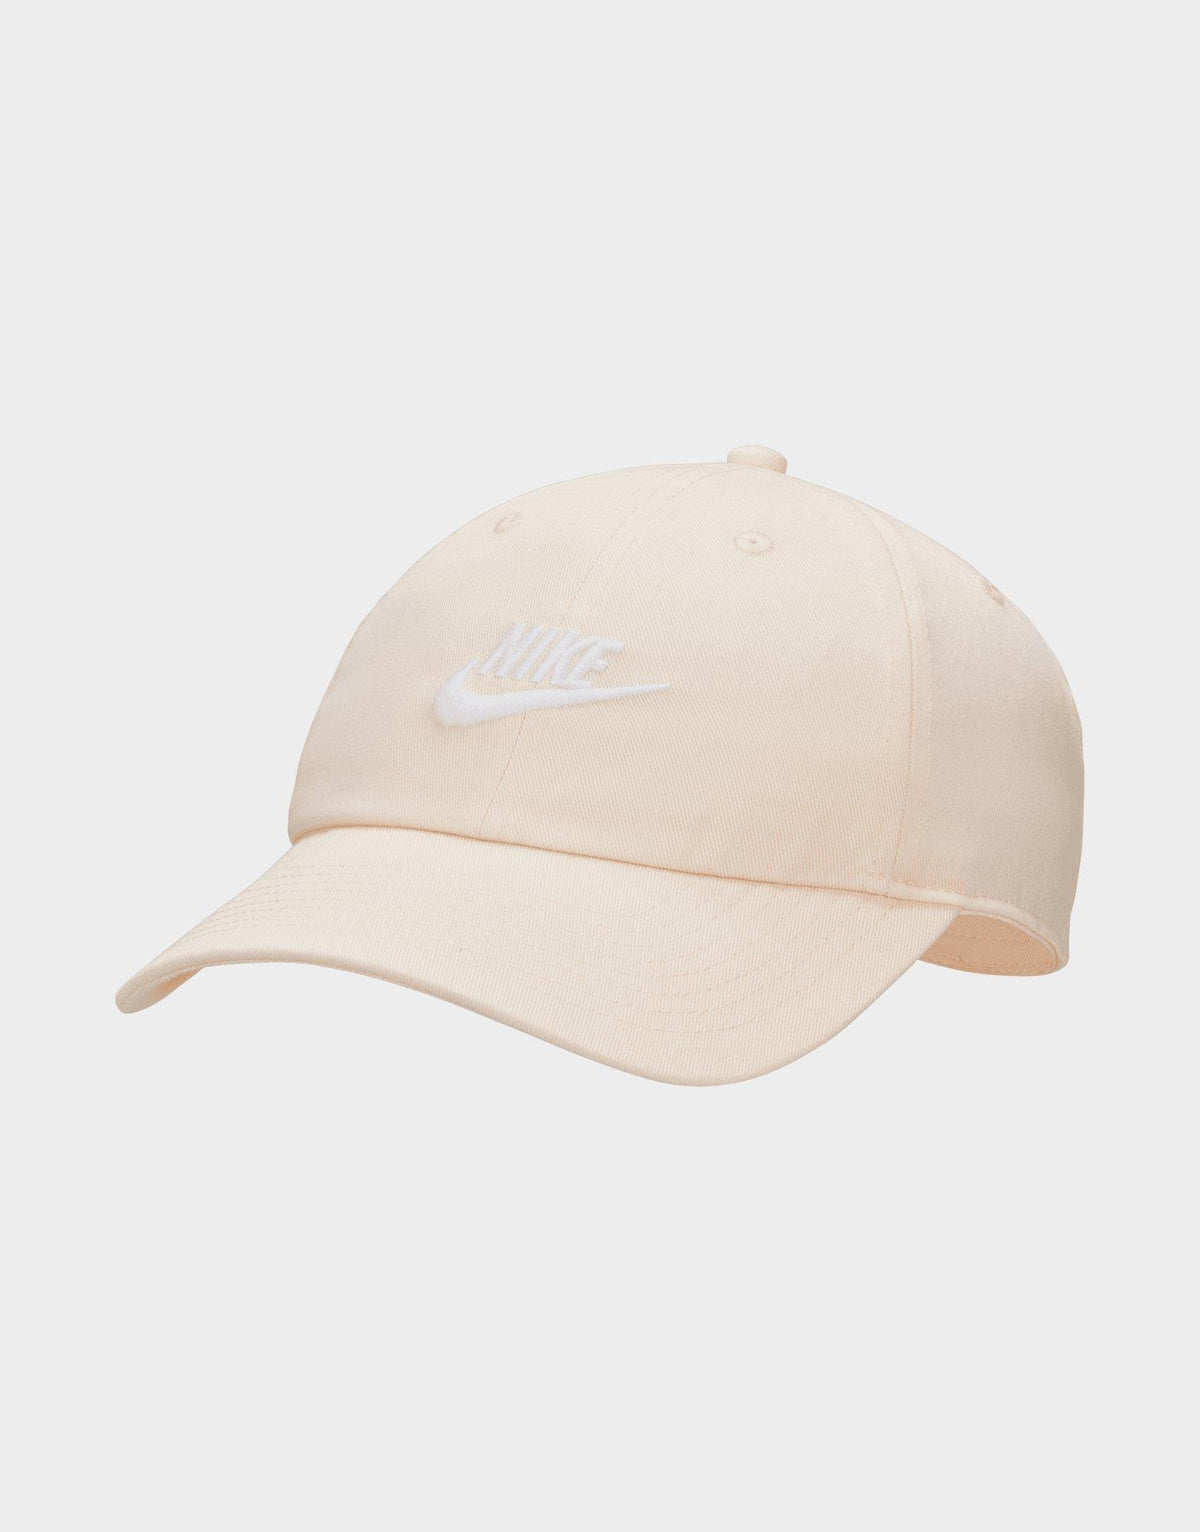 כובע מצחייה Club Unstructured Futura